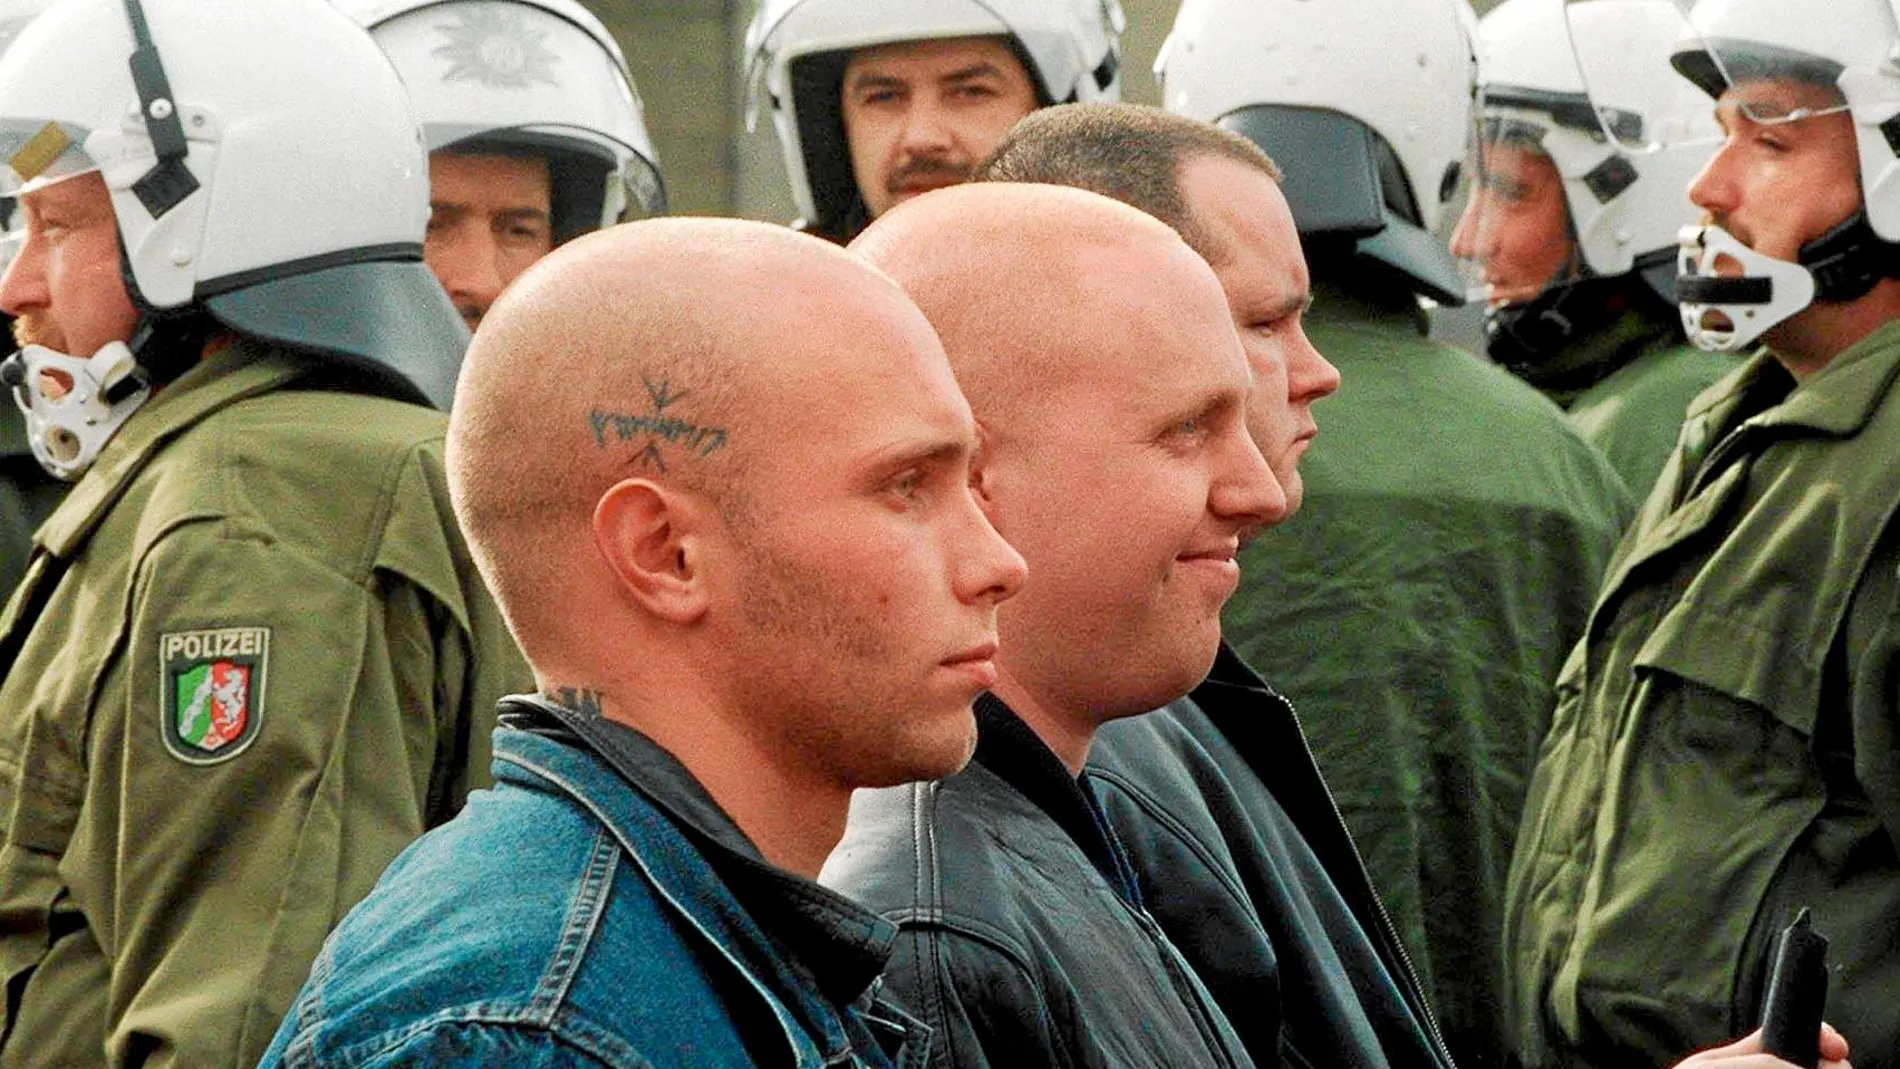 Los enfrentamientos entre los skinheads y las fuerzas de seguridad han sido abundantes desde el nacimiento del movimiento / Ap